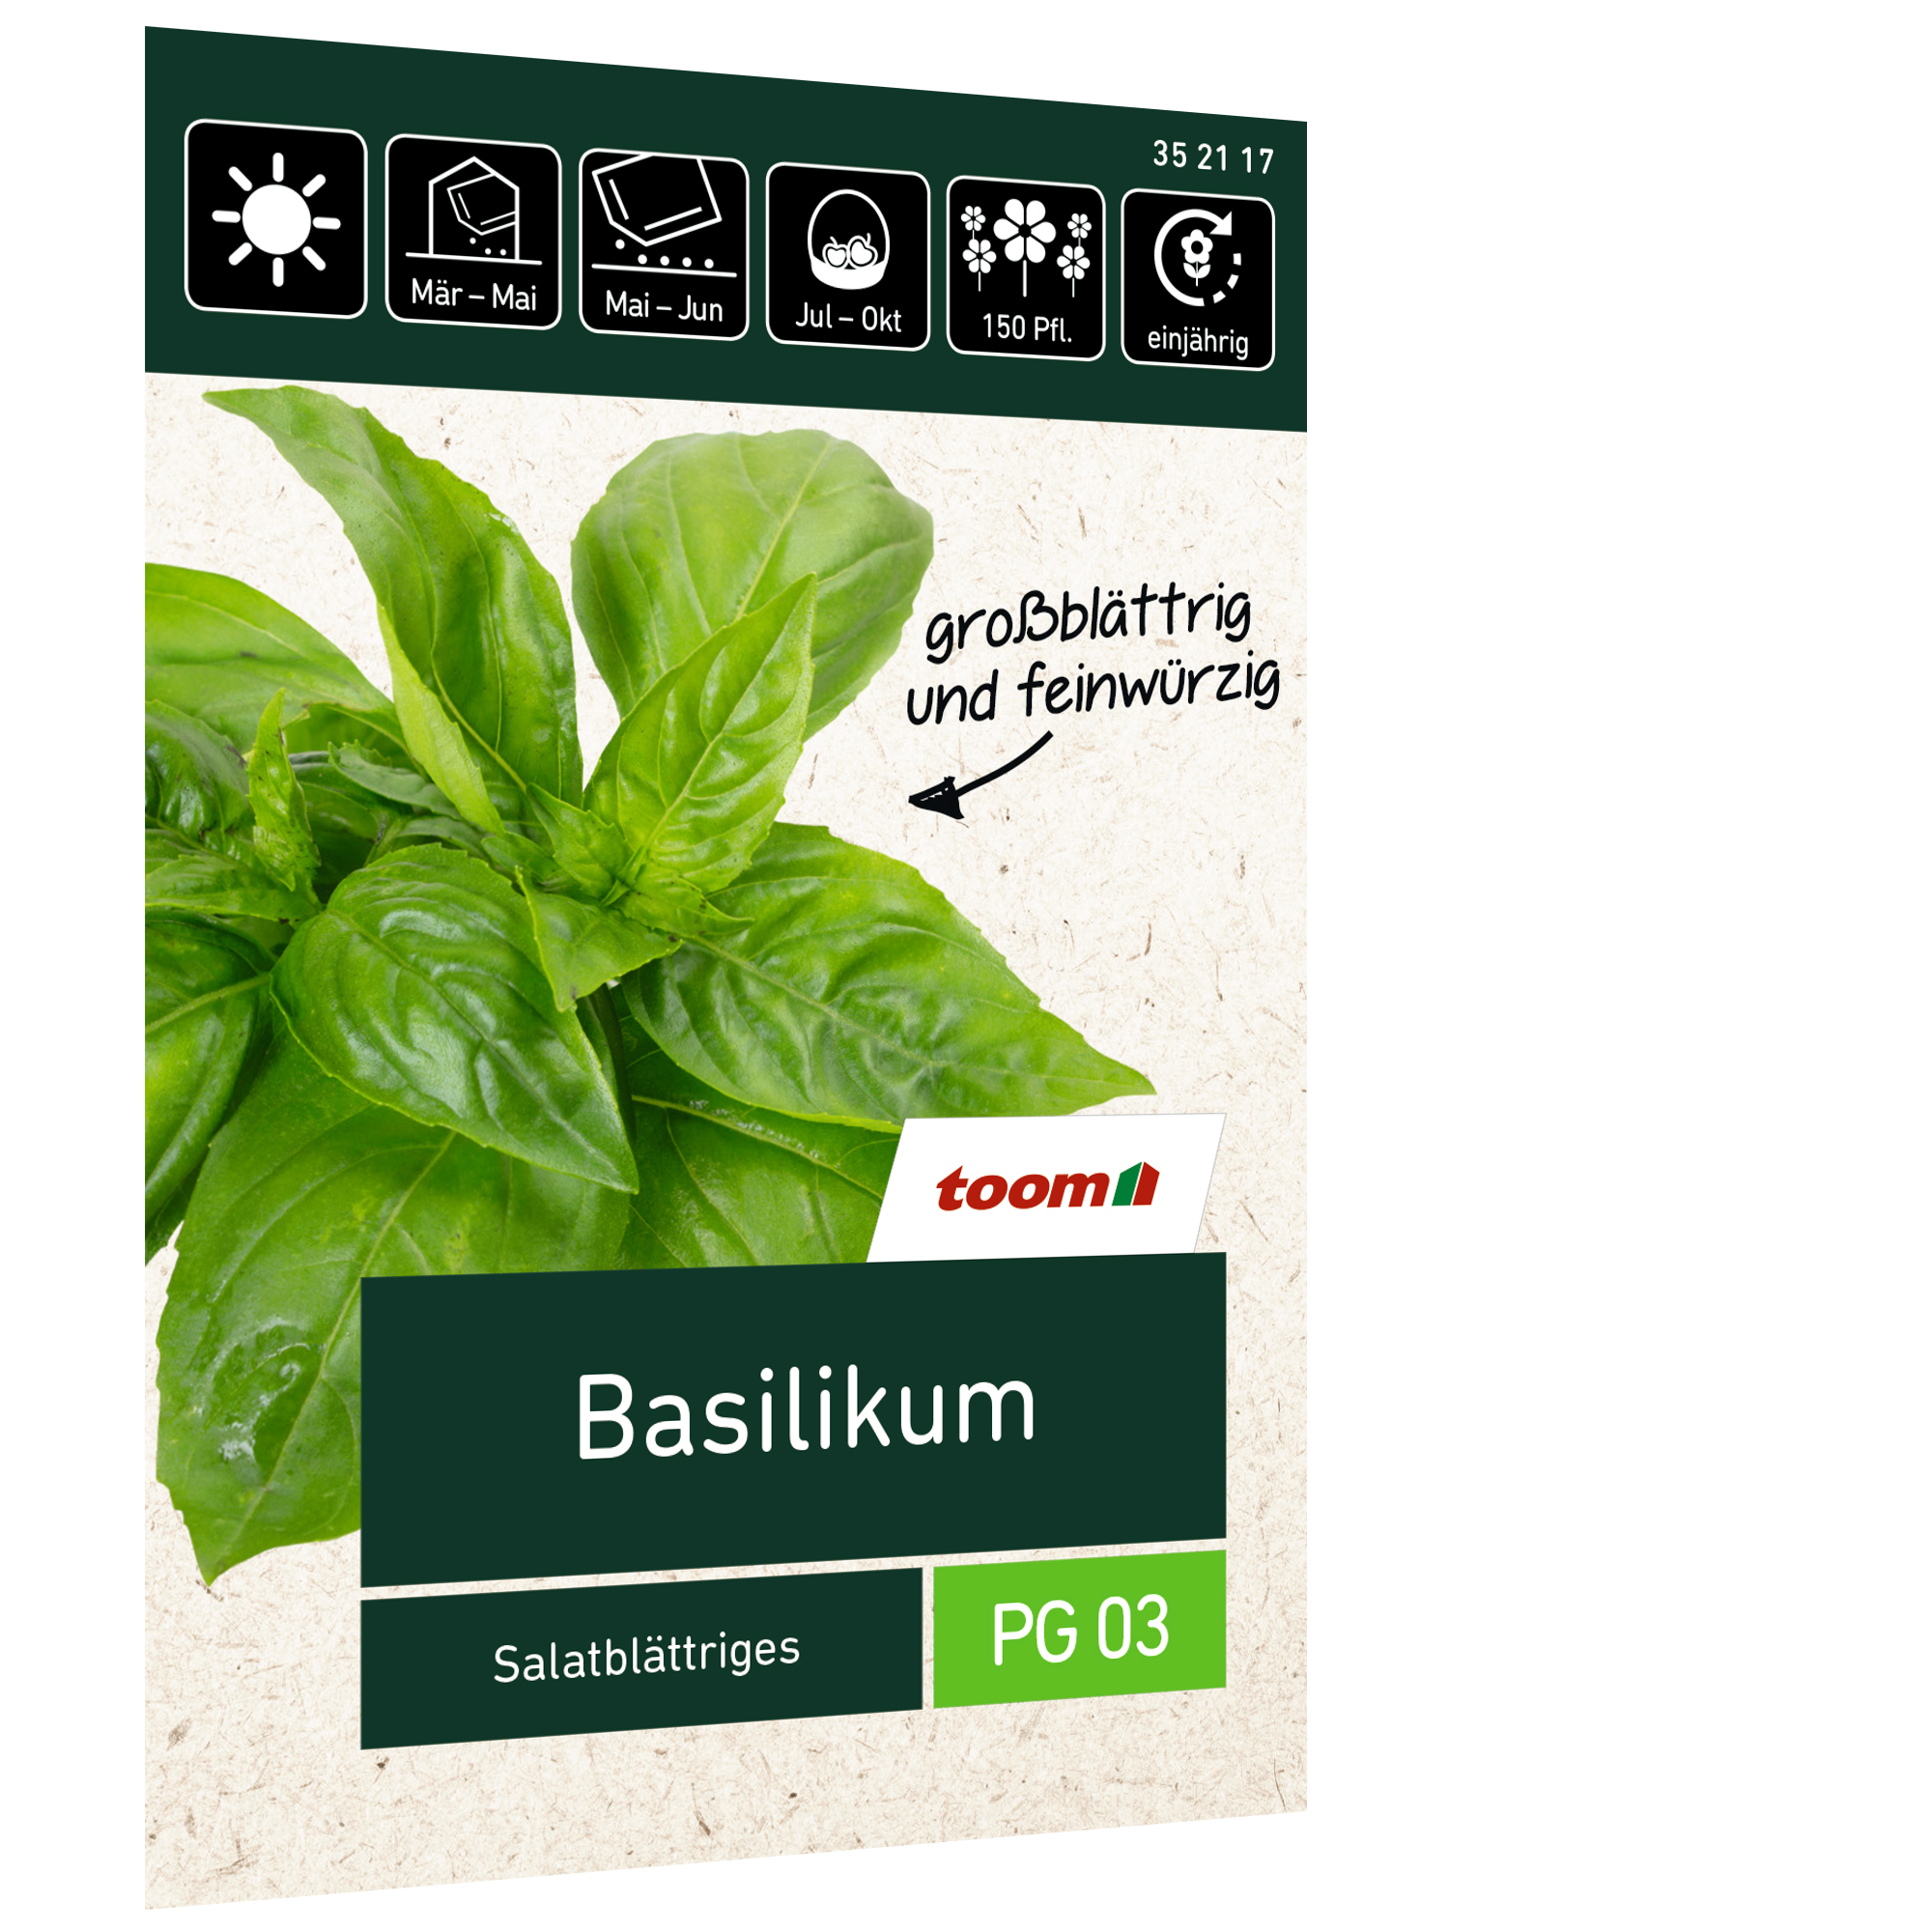 Basilikum 'Salatblättriges' + product picture